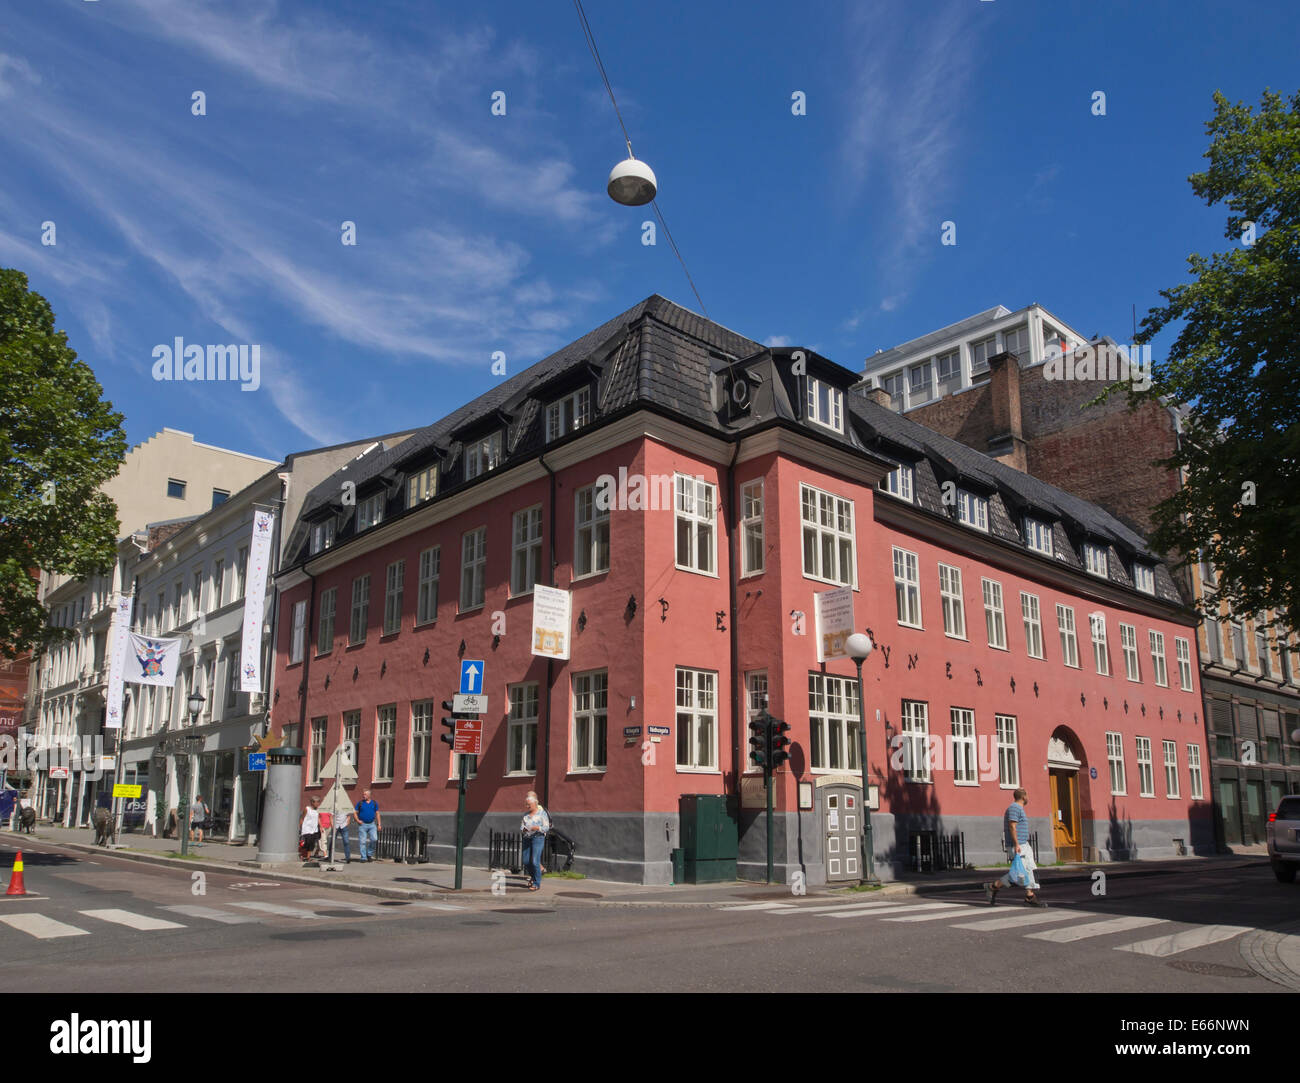 Ho Statholdergaarden Kvadraturen centrale di Oslo Norvegia,edificio protetto dal 1640, oggi sede di un ristorante insignito di stelle Michelin Foto Stock